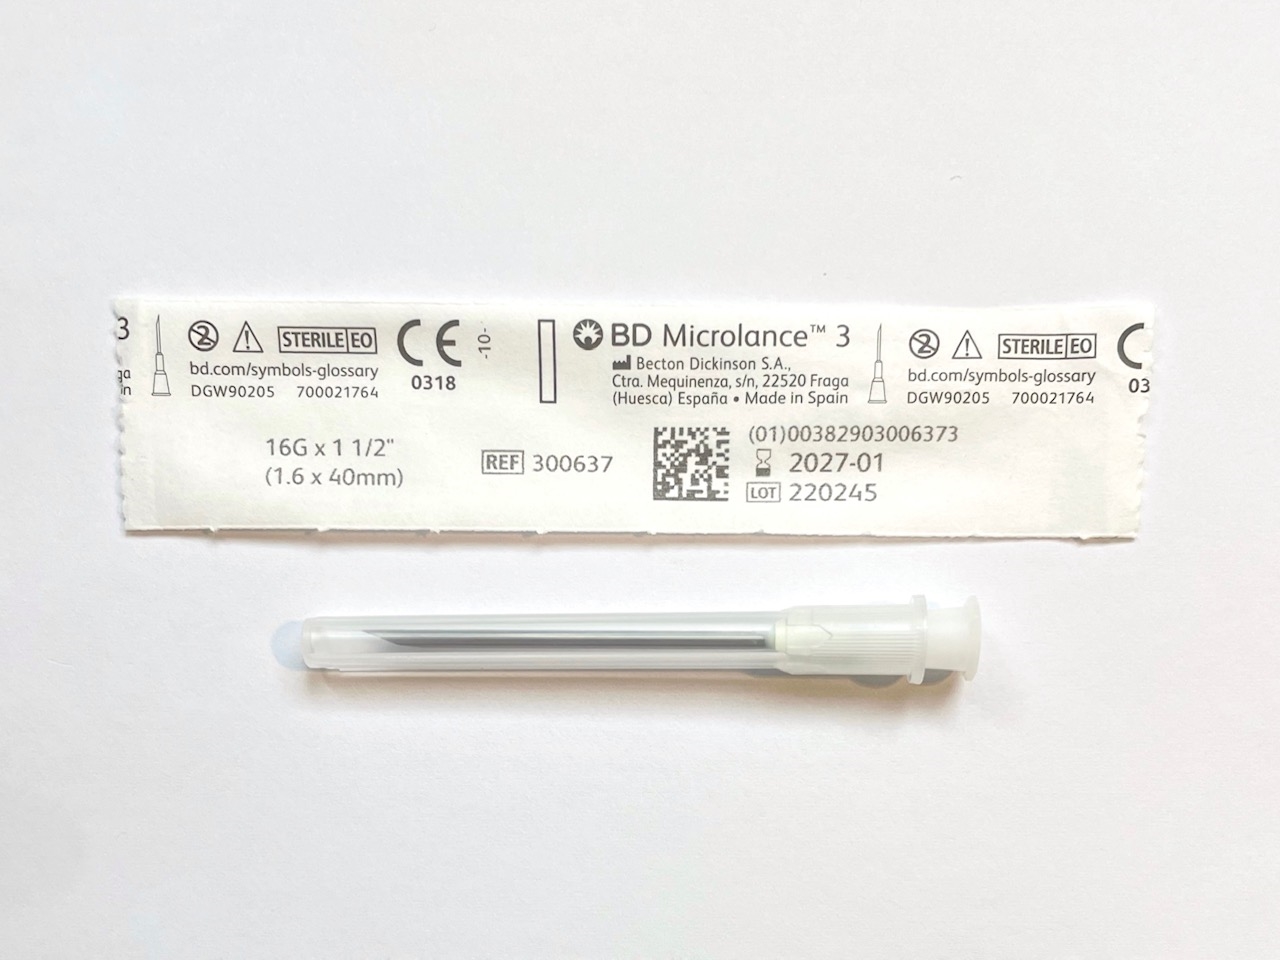 BD 16 gauge x 1 1/2 inch needle